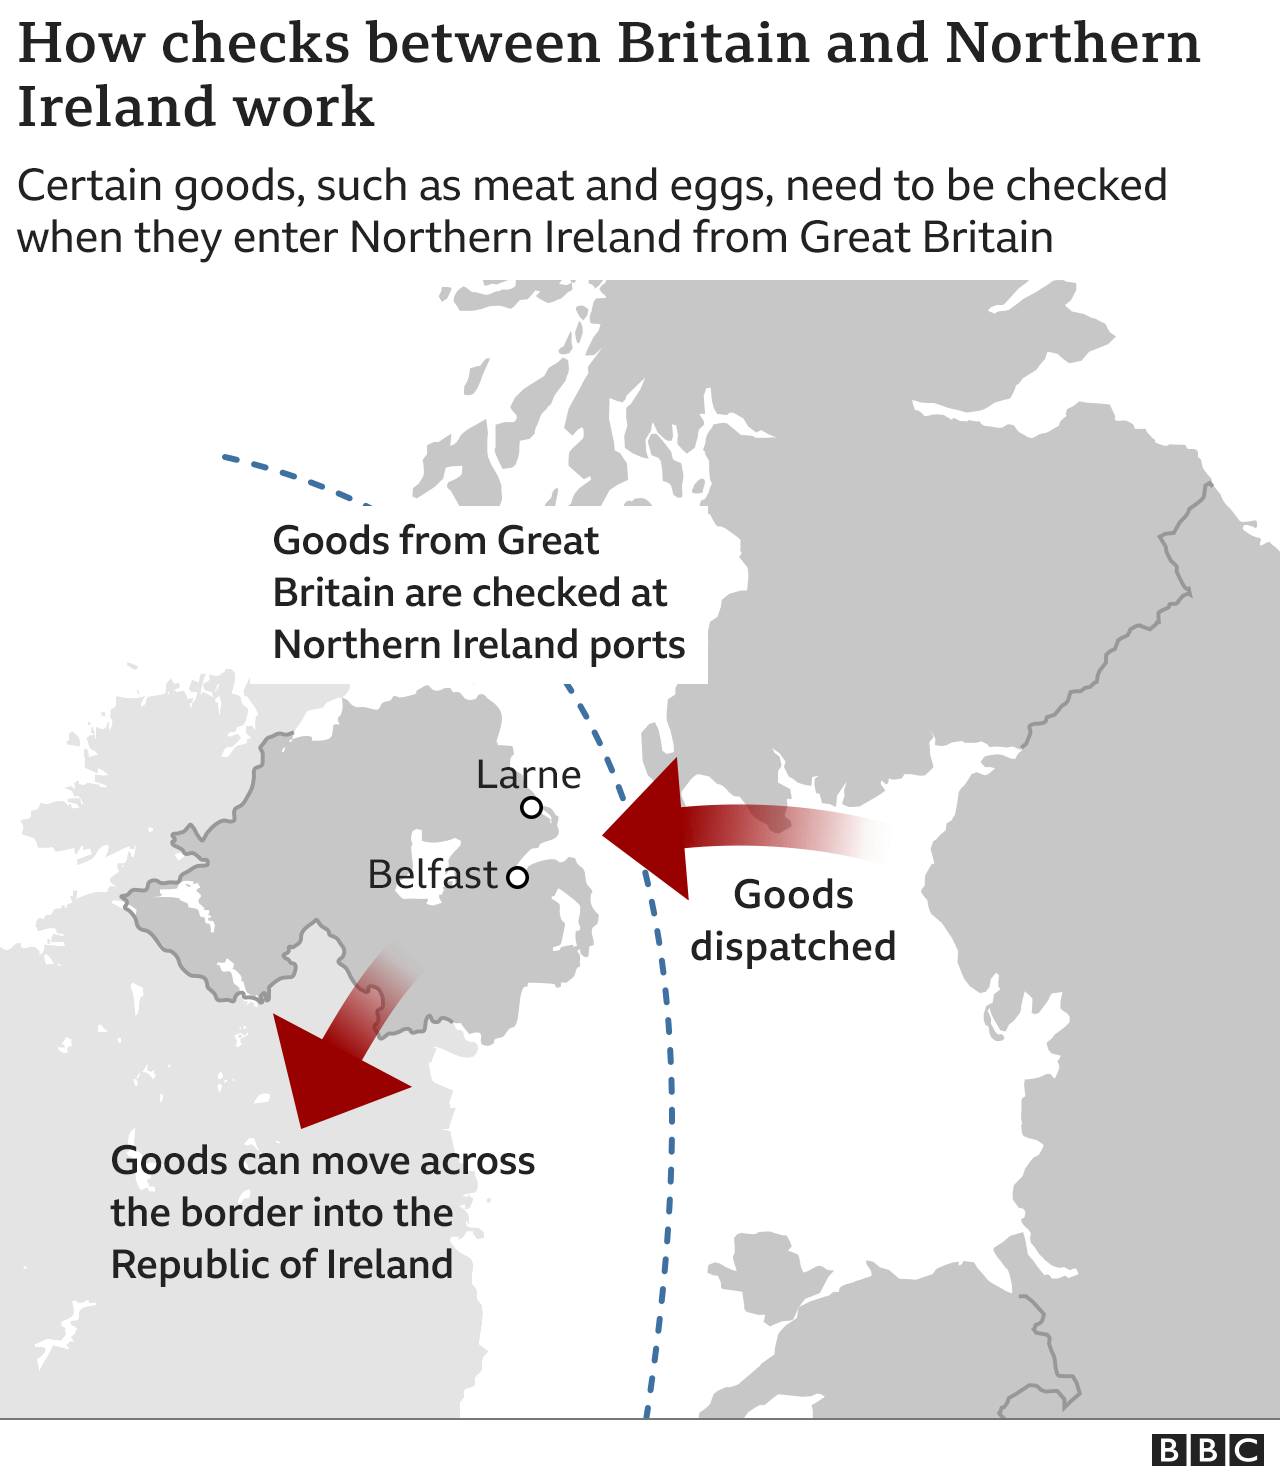 Un mapa del Reino Unido que muestra cómo viajan las mercancías desde Gran Bretaña a Irlanda del Norte y desde allí a la República de Irlanda.